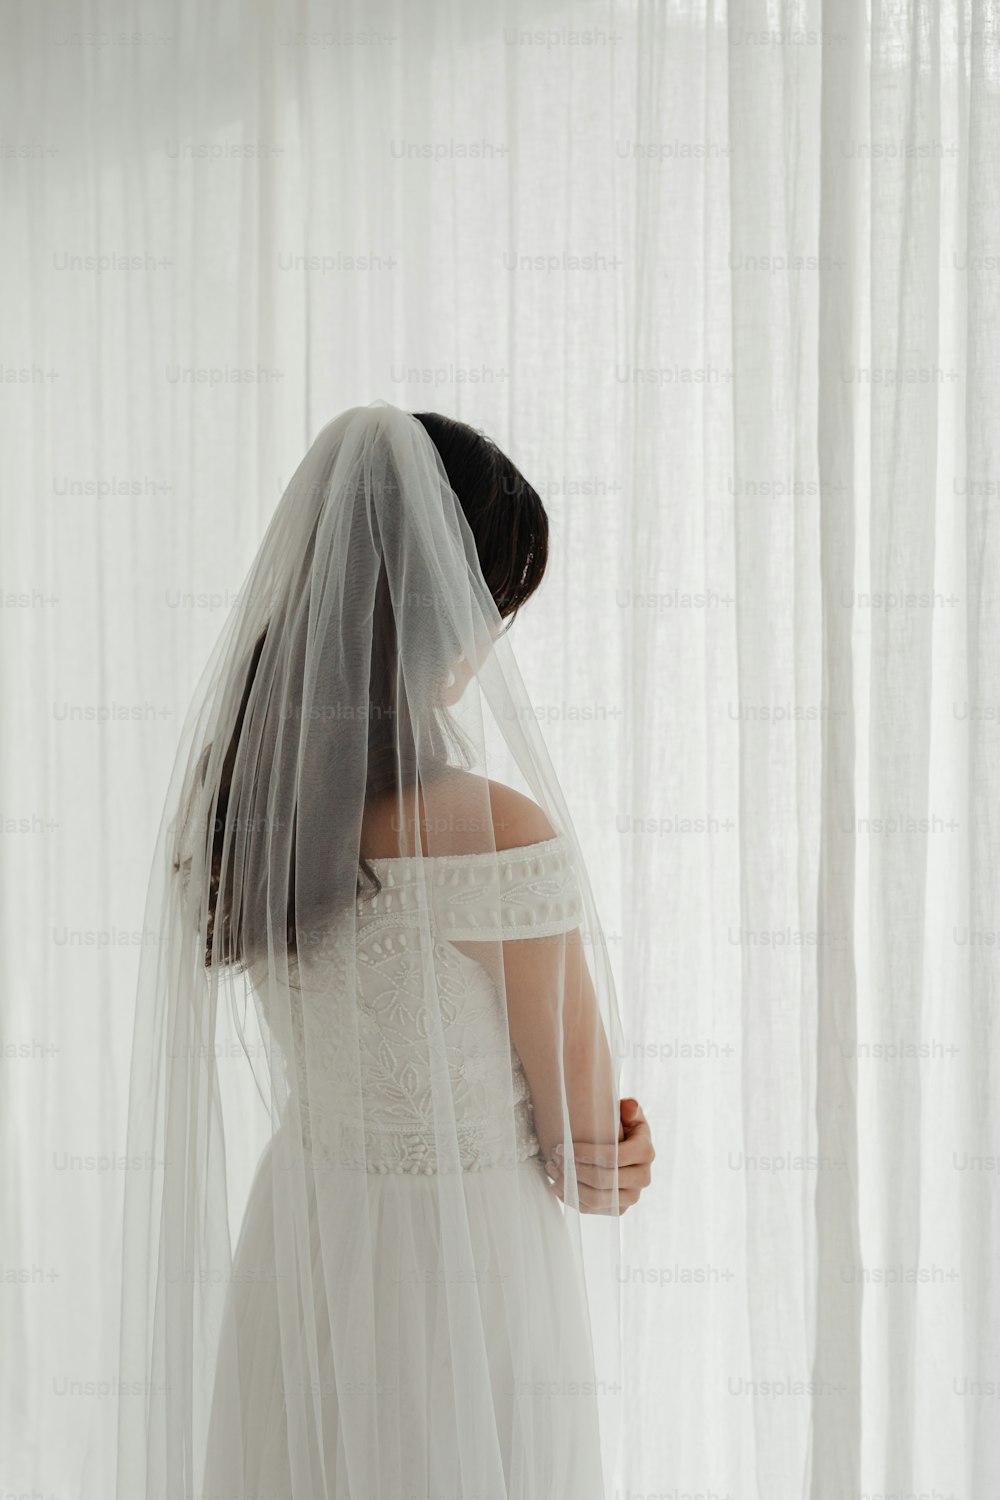 Une femme en robe de mariée et voile